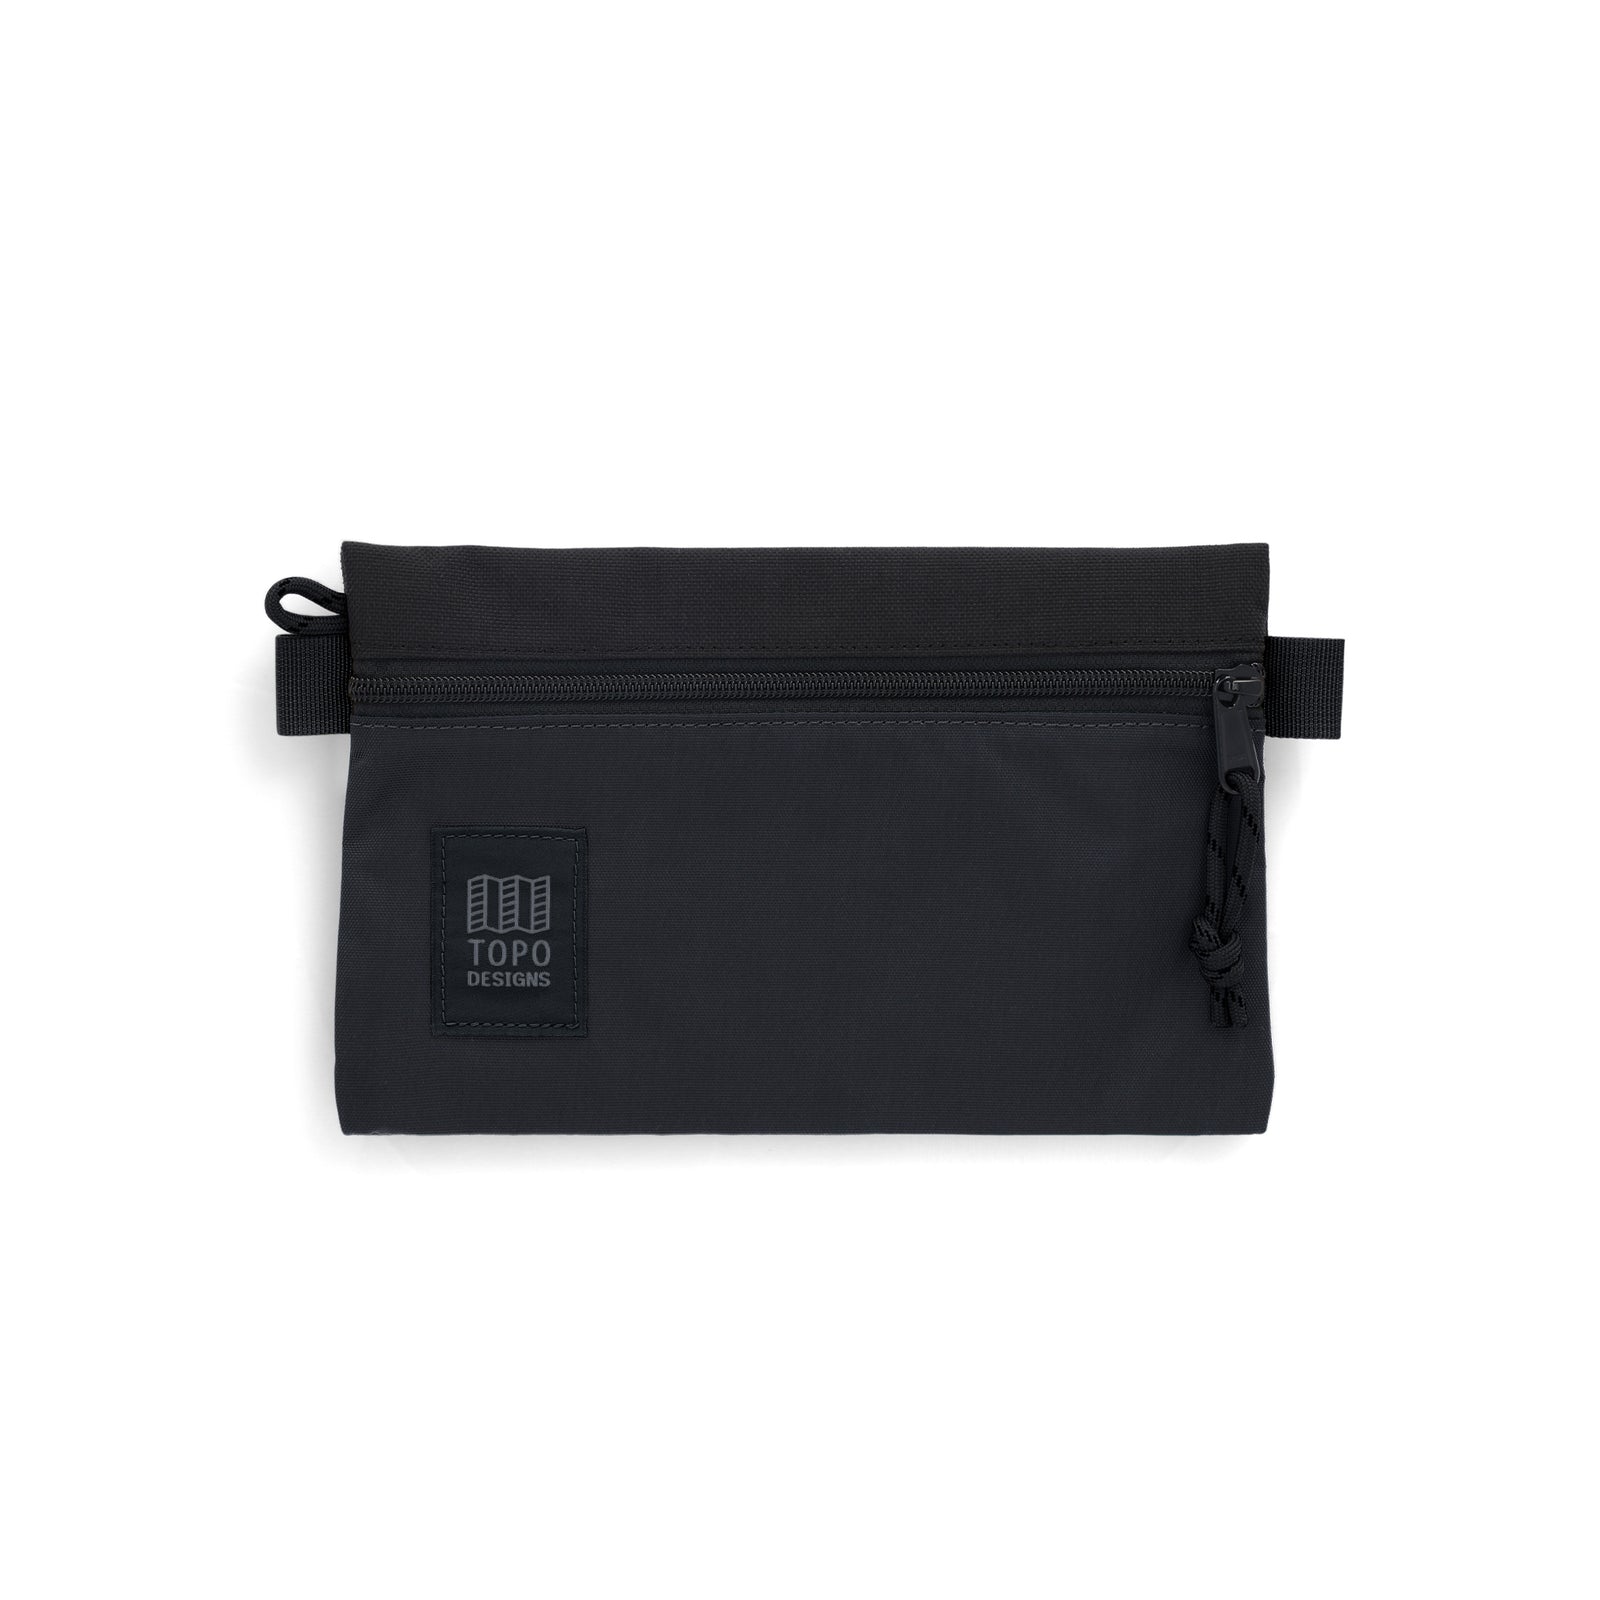 Topo Designs Accessory Bag "Small" in "Black / Black"